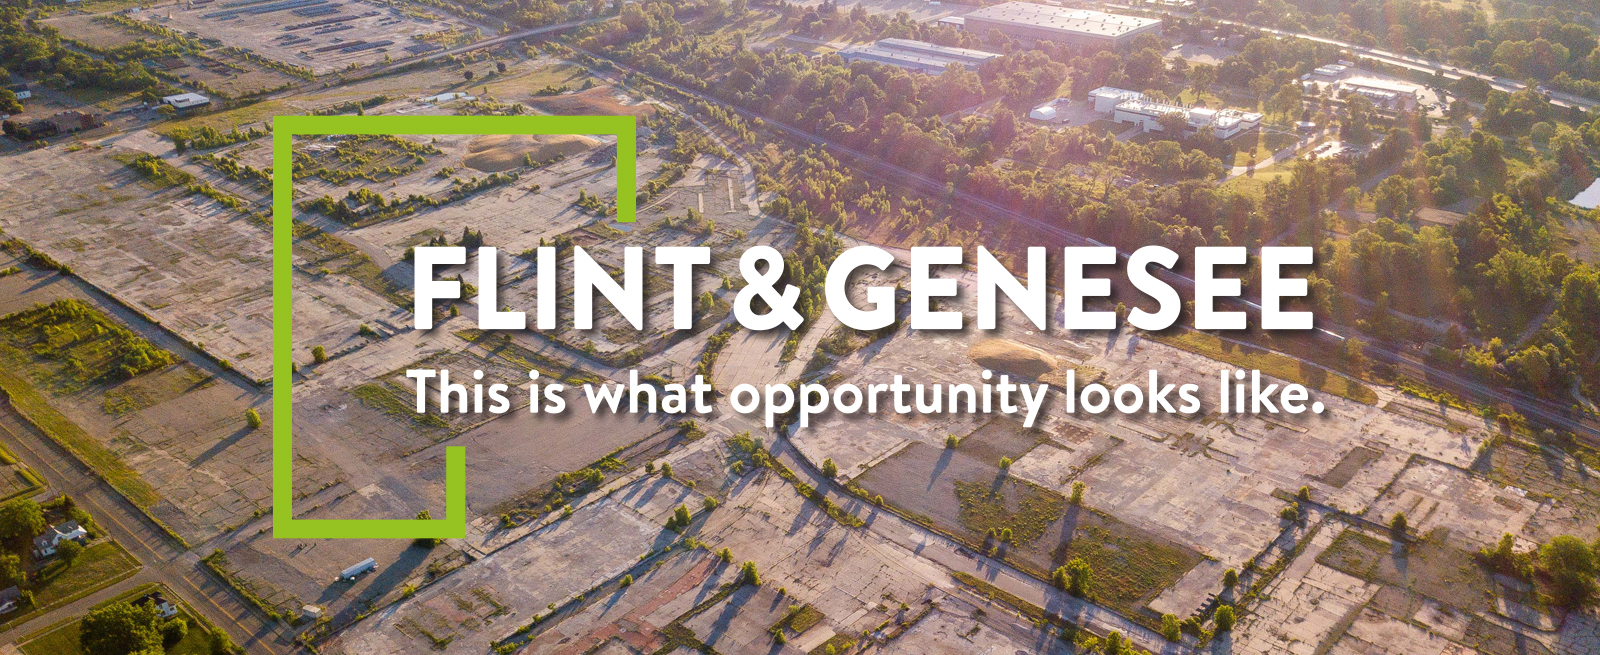 Flint & Genesee Economic Alliance